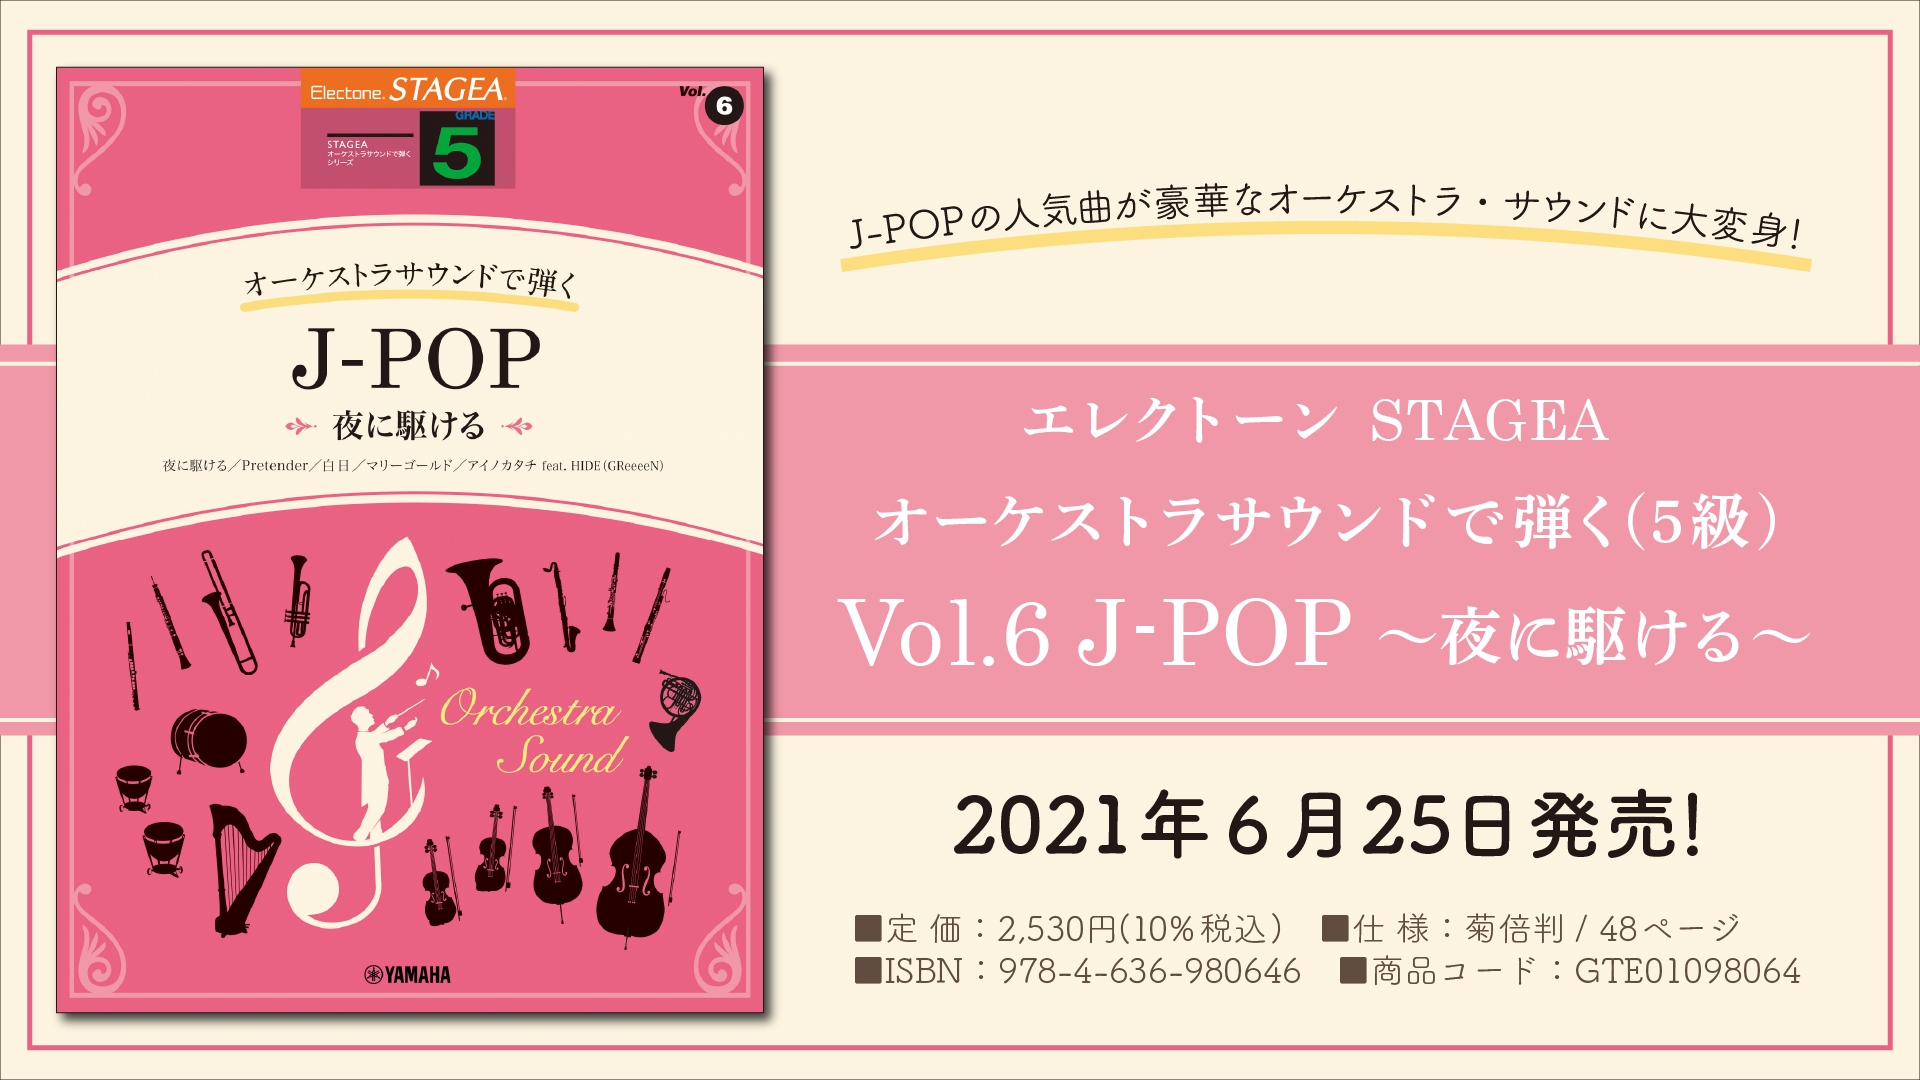 エレクトーン 『STAGEA オーケストラサウンドで弾く (5級) Vol.6 J-POP